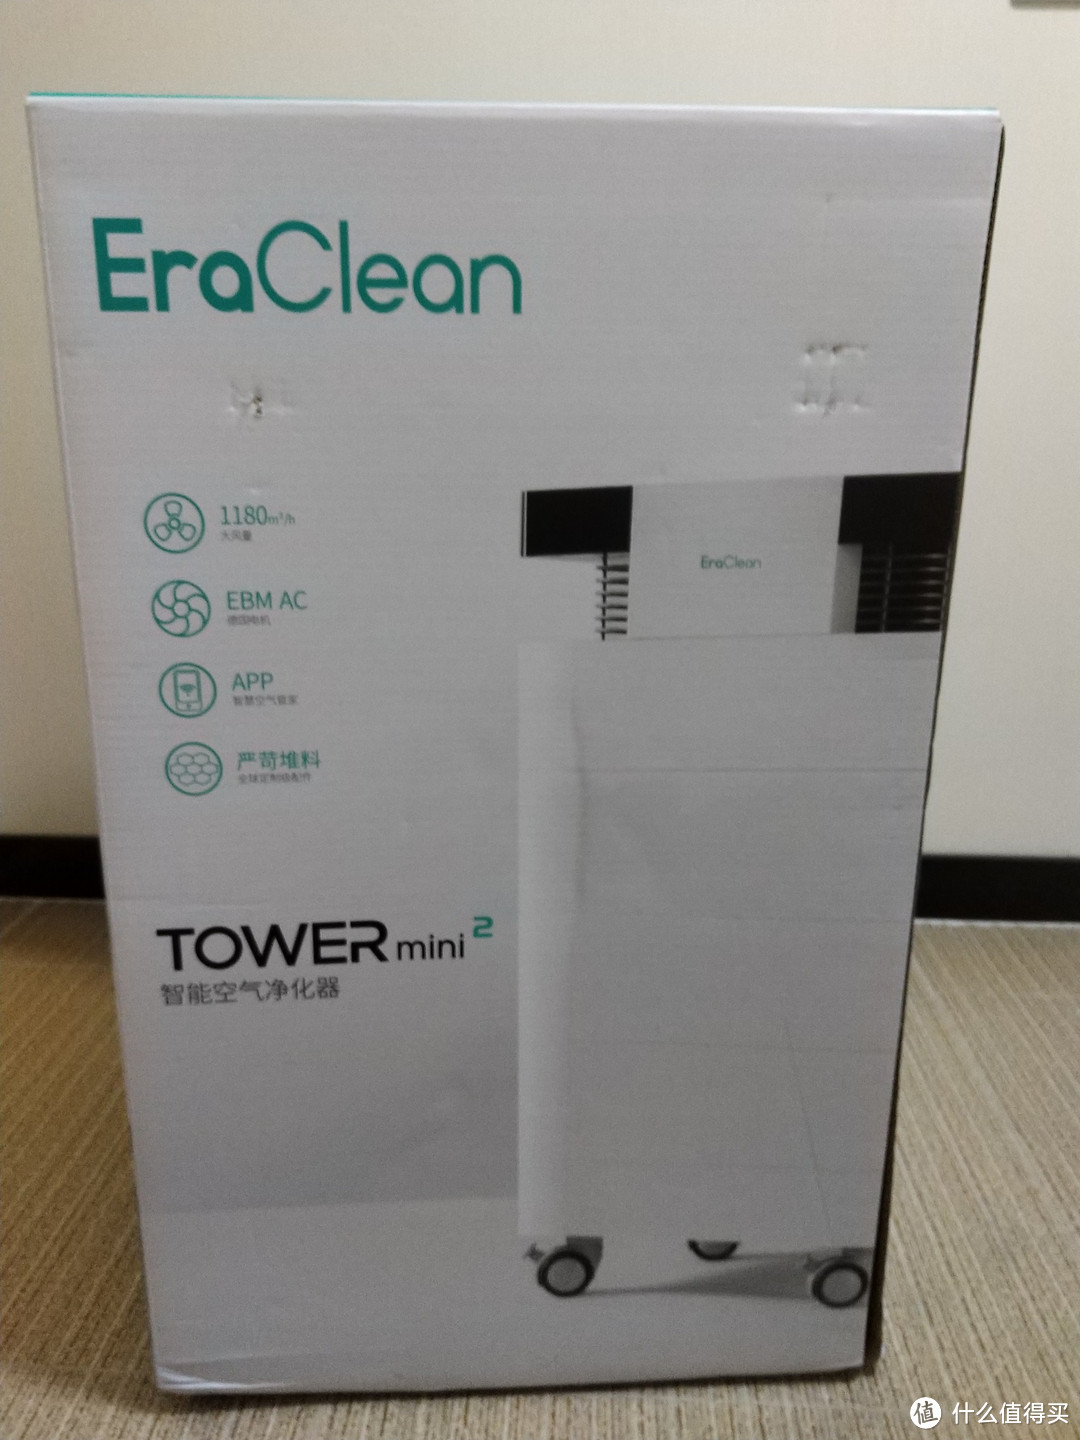 净化强效堆料王——【EraClean Tower mini2F空气净化器】开箱使用小评